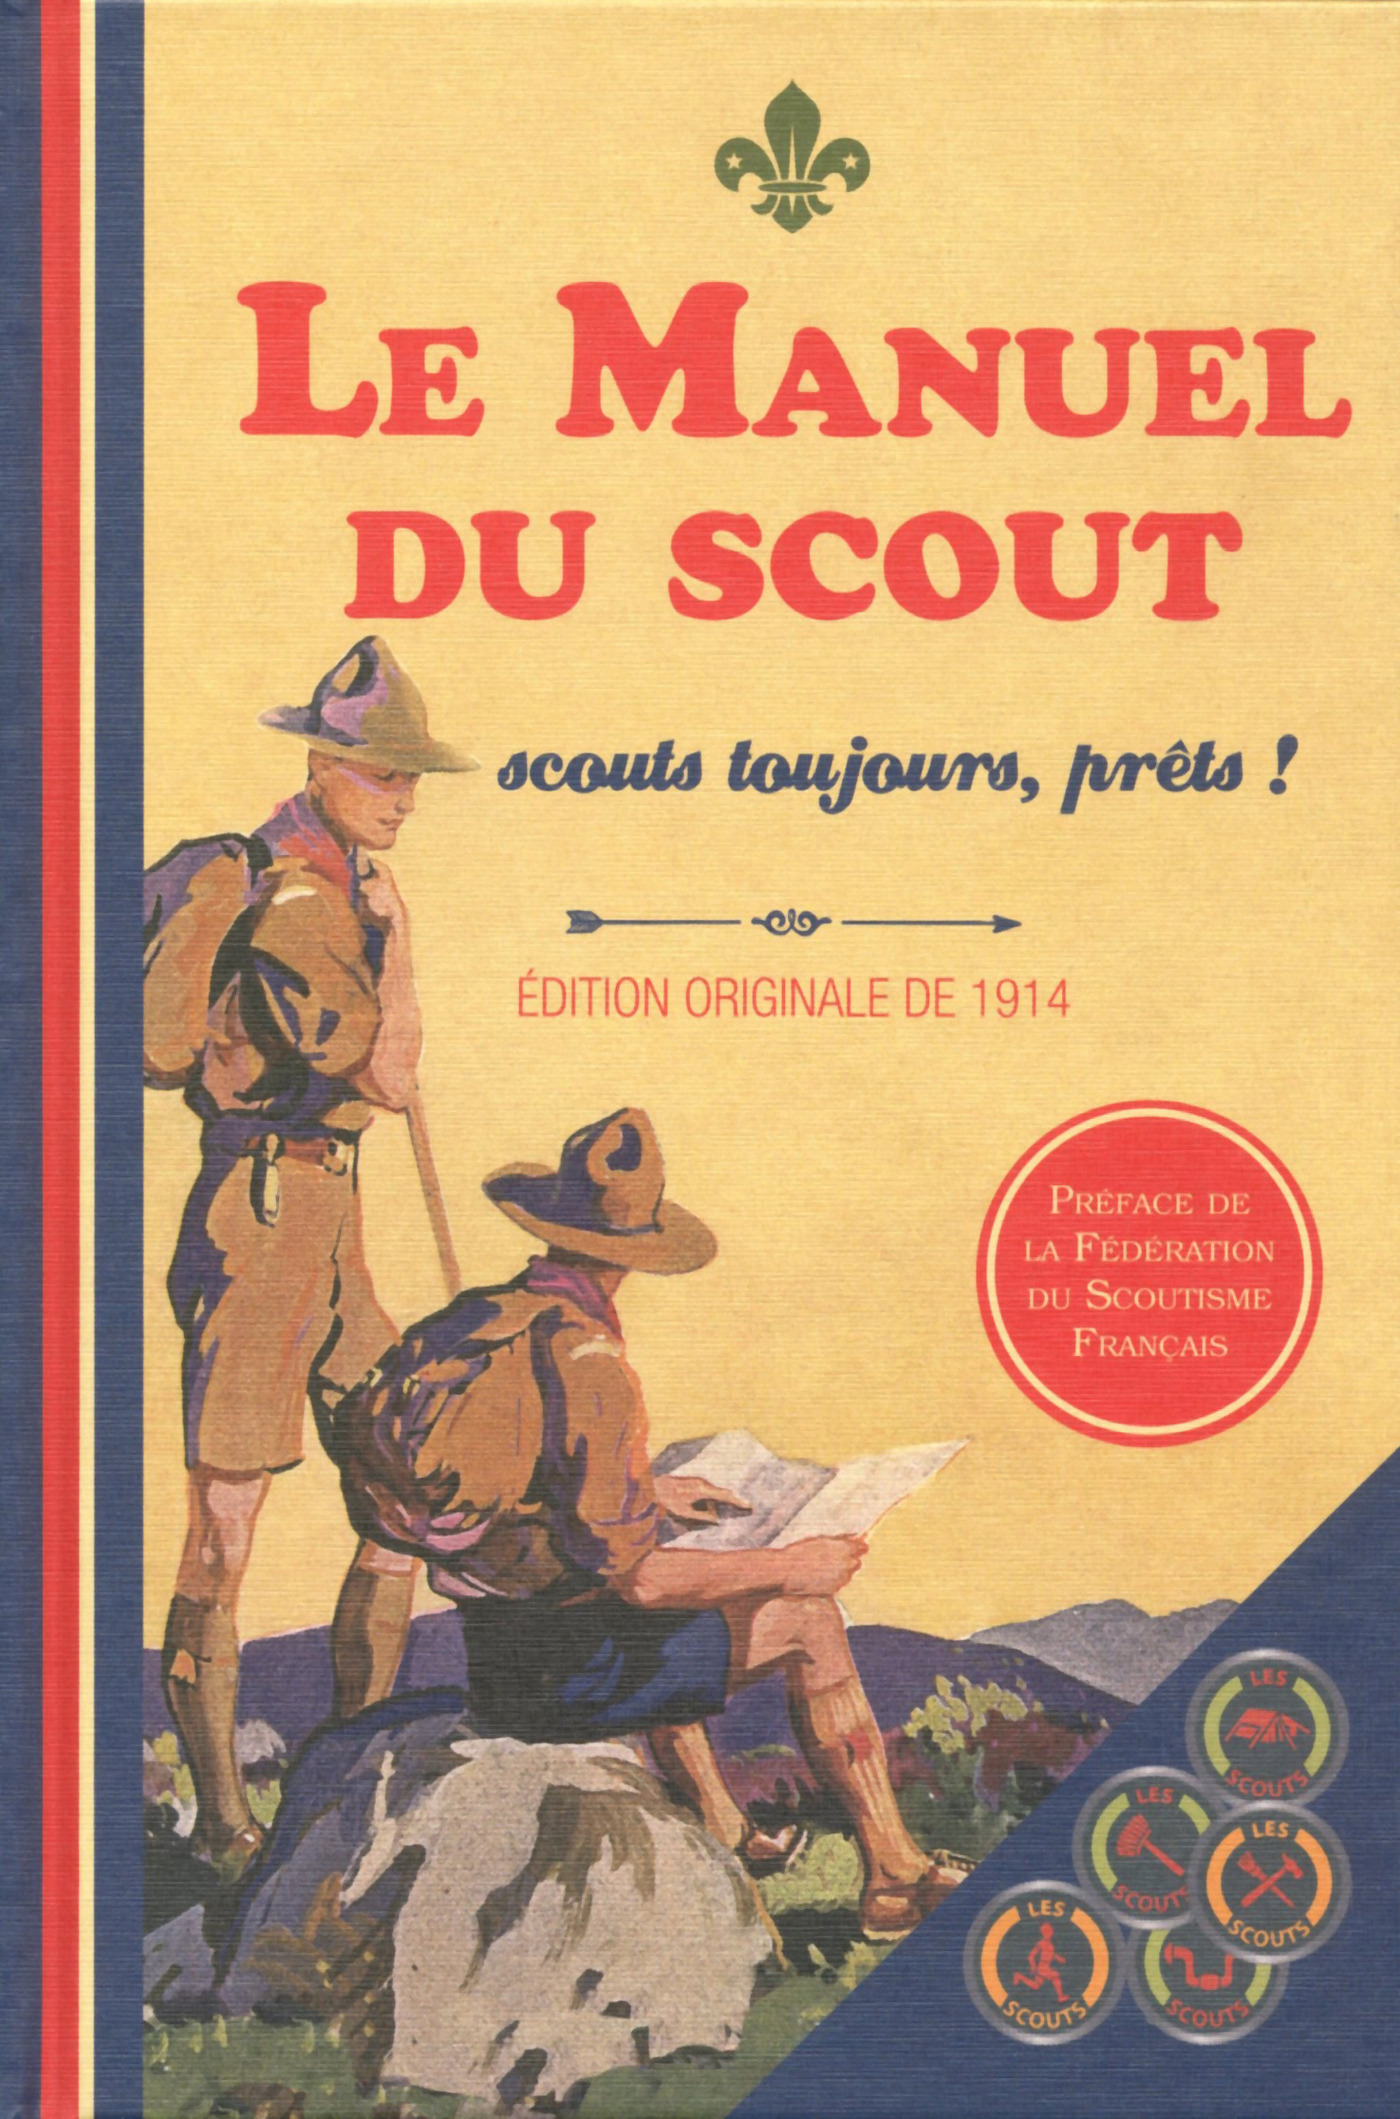 Le Manuel du Scout - Scouts toujours, prêts!